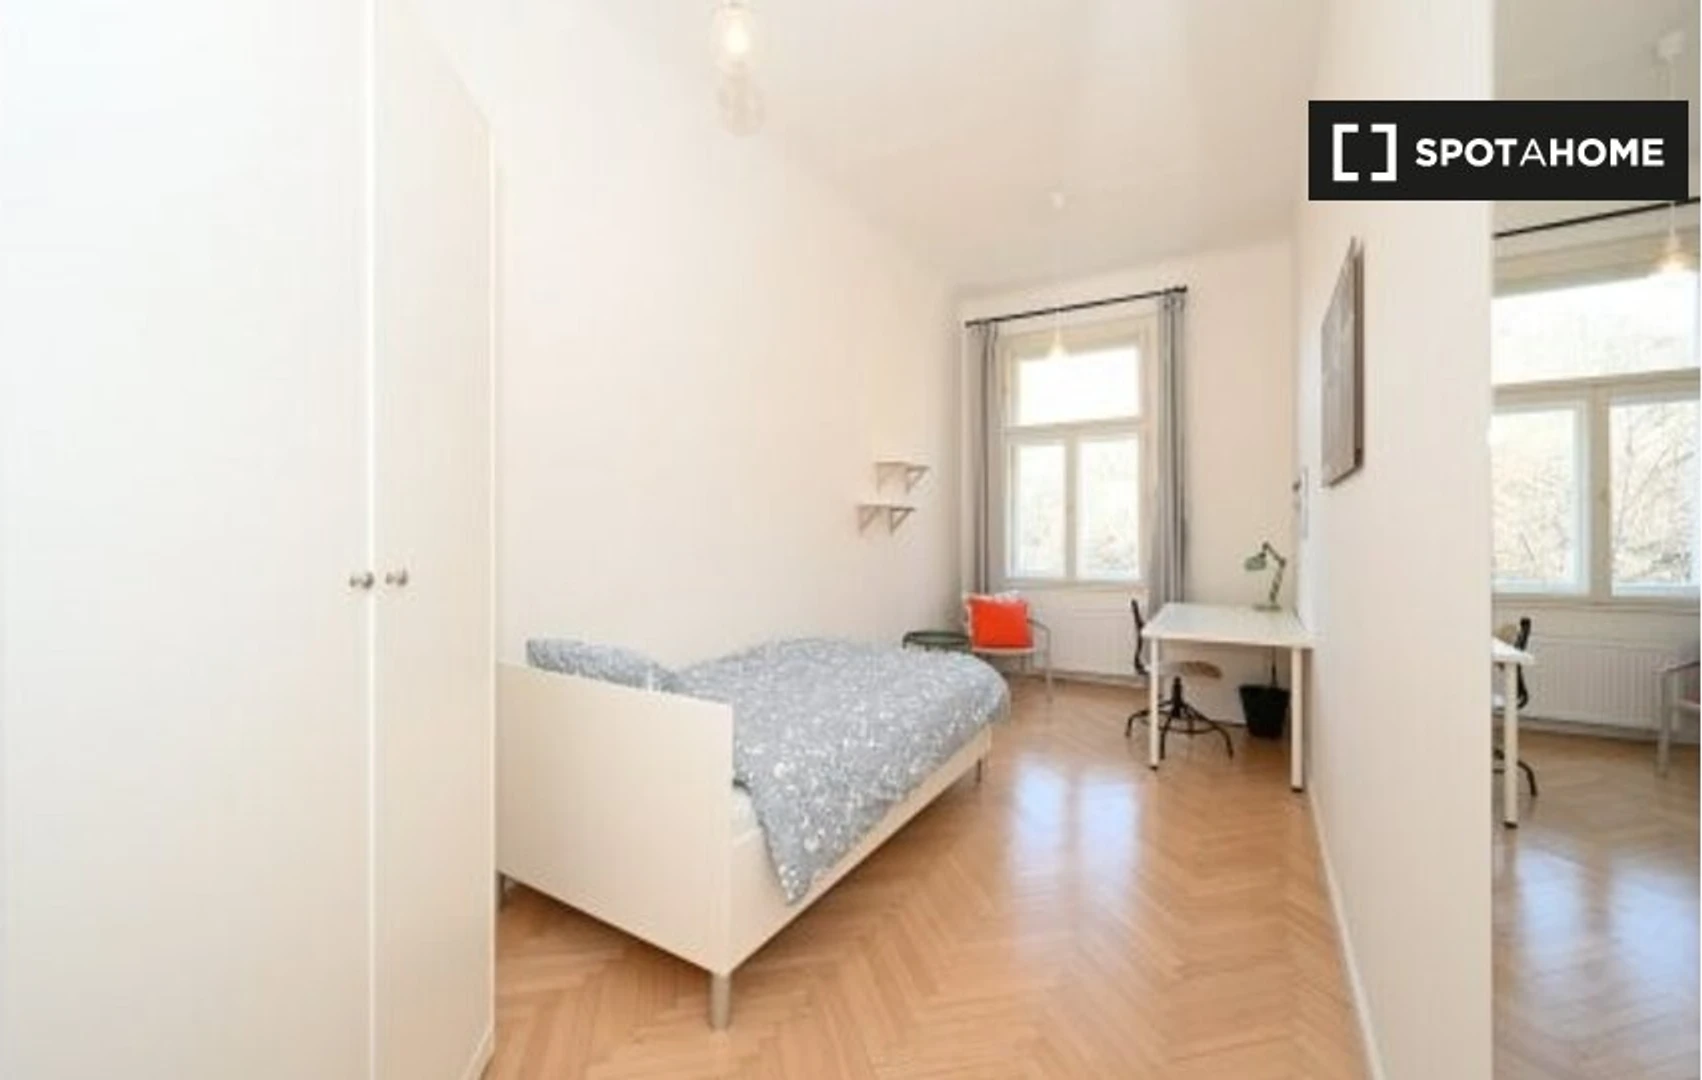 Quarto para alugar com cama de casal em Praga